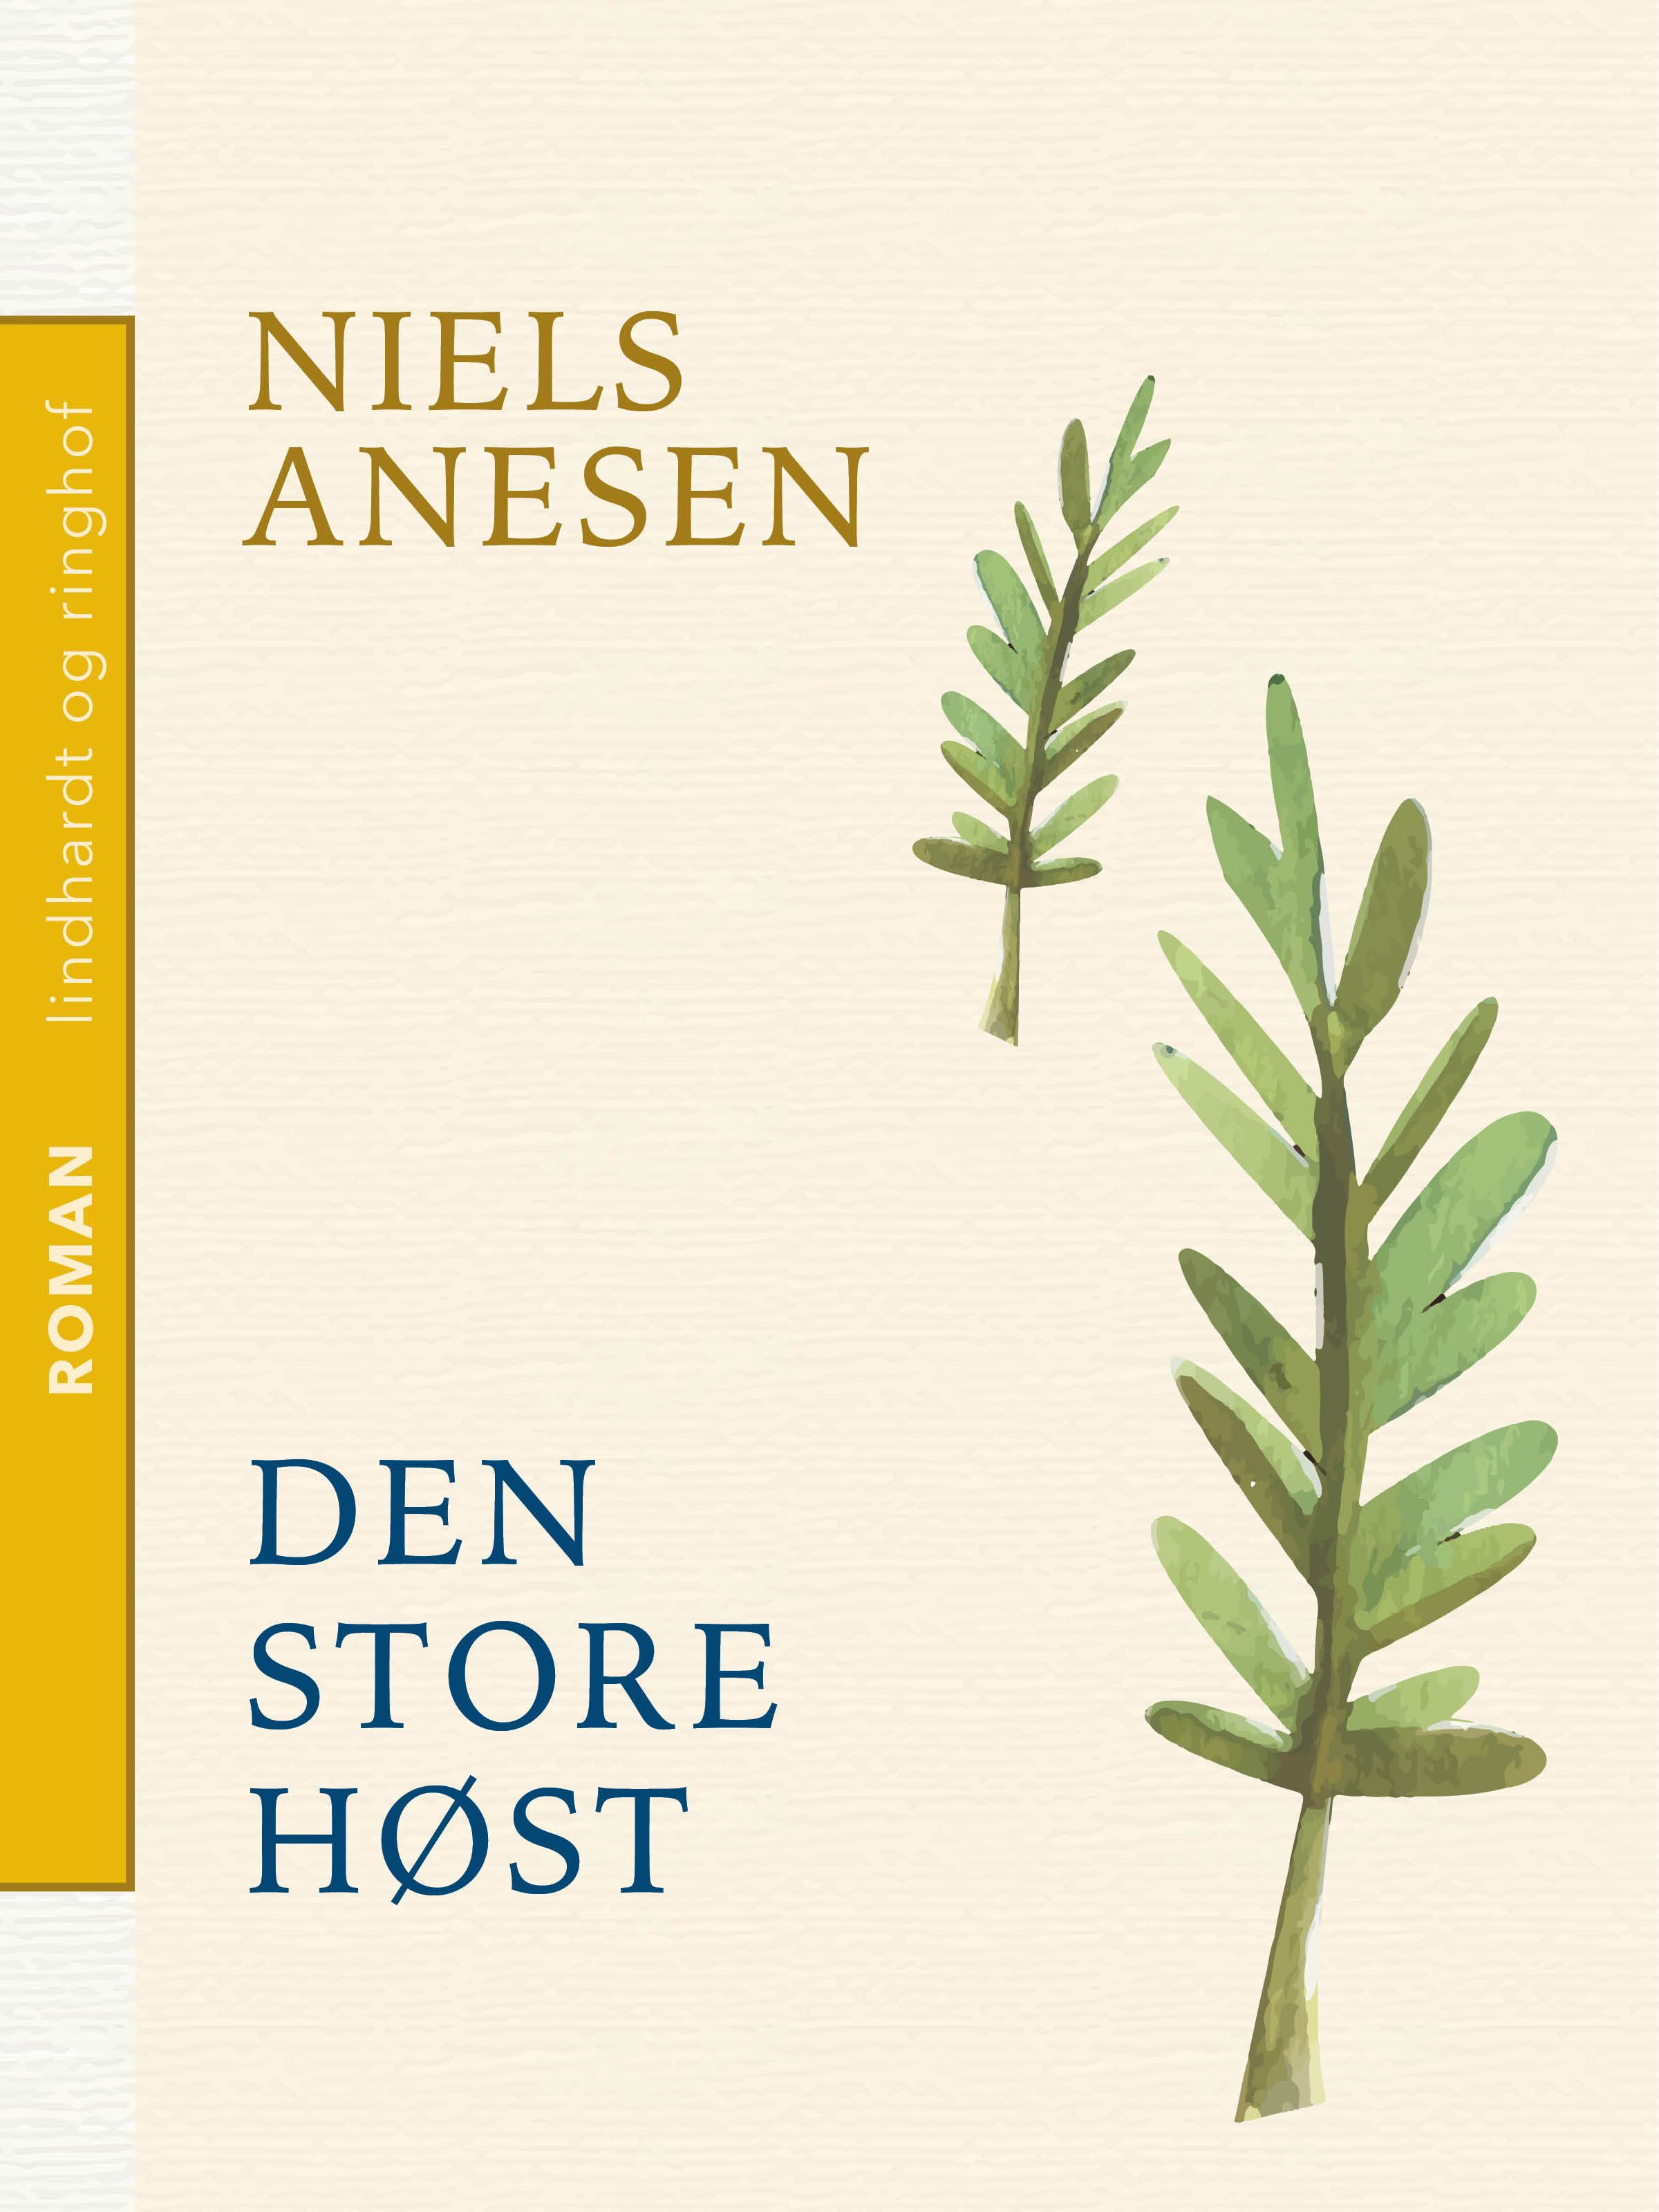 Den store høst, eBook by Niels Anesen